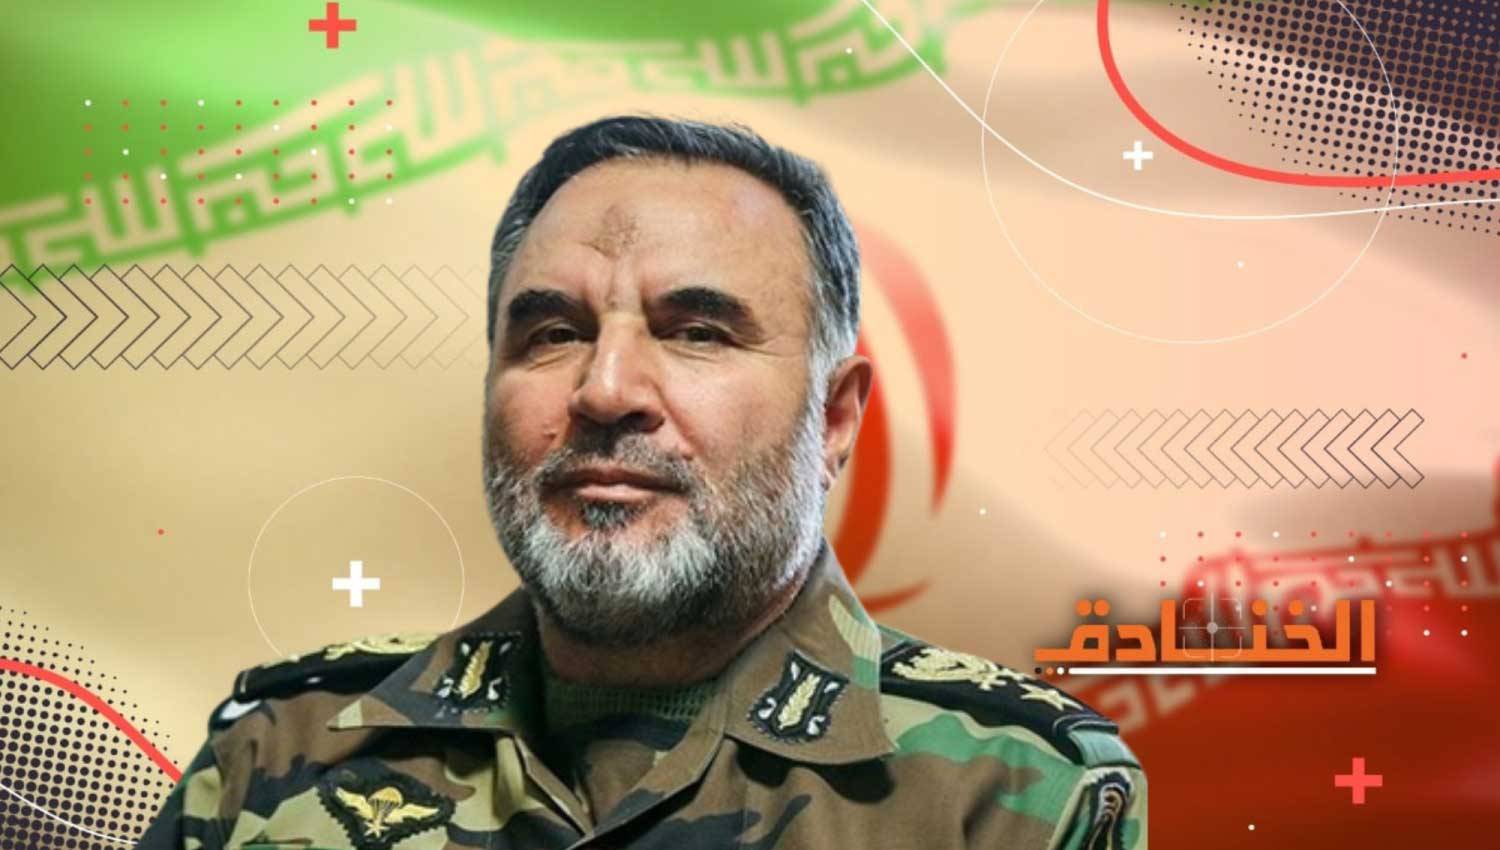 العميد كيومرث حيدري: قائد القوات البرية في الجيش الإيراني